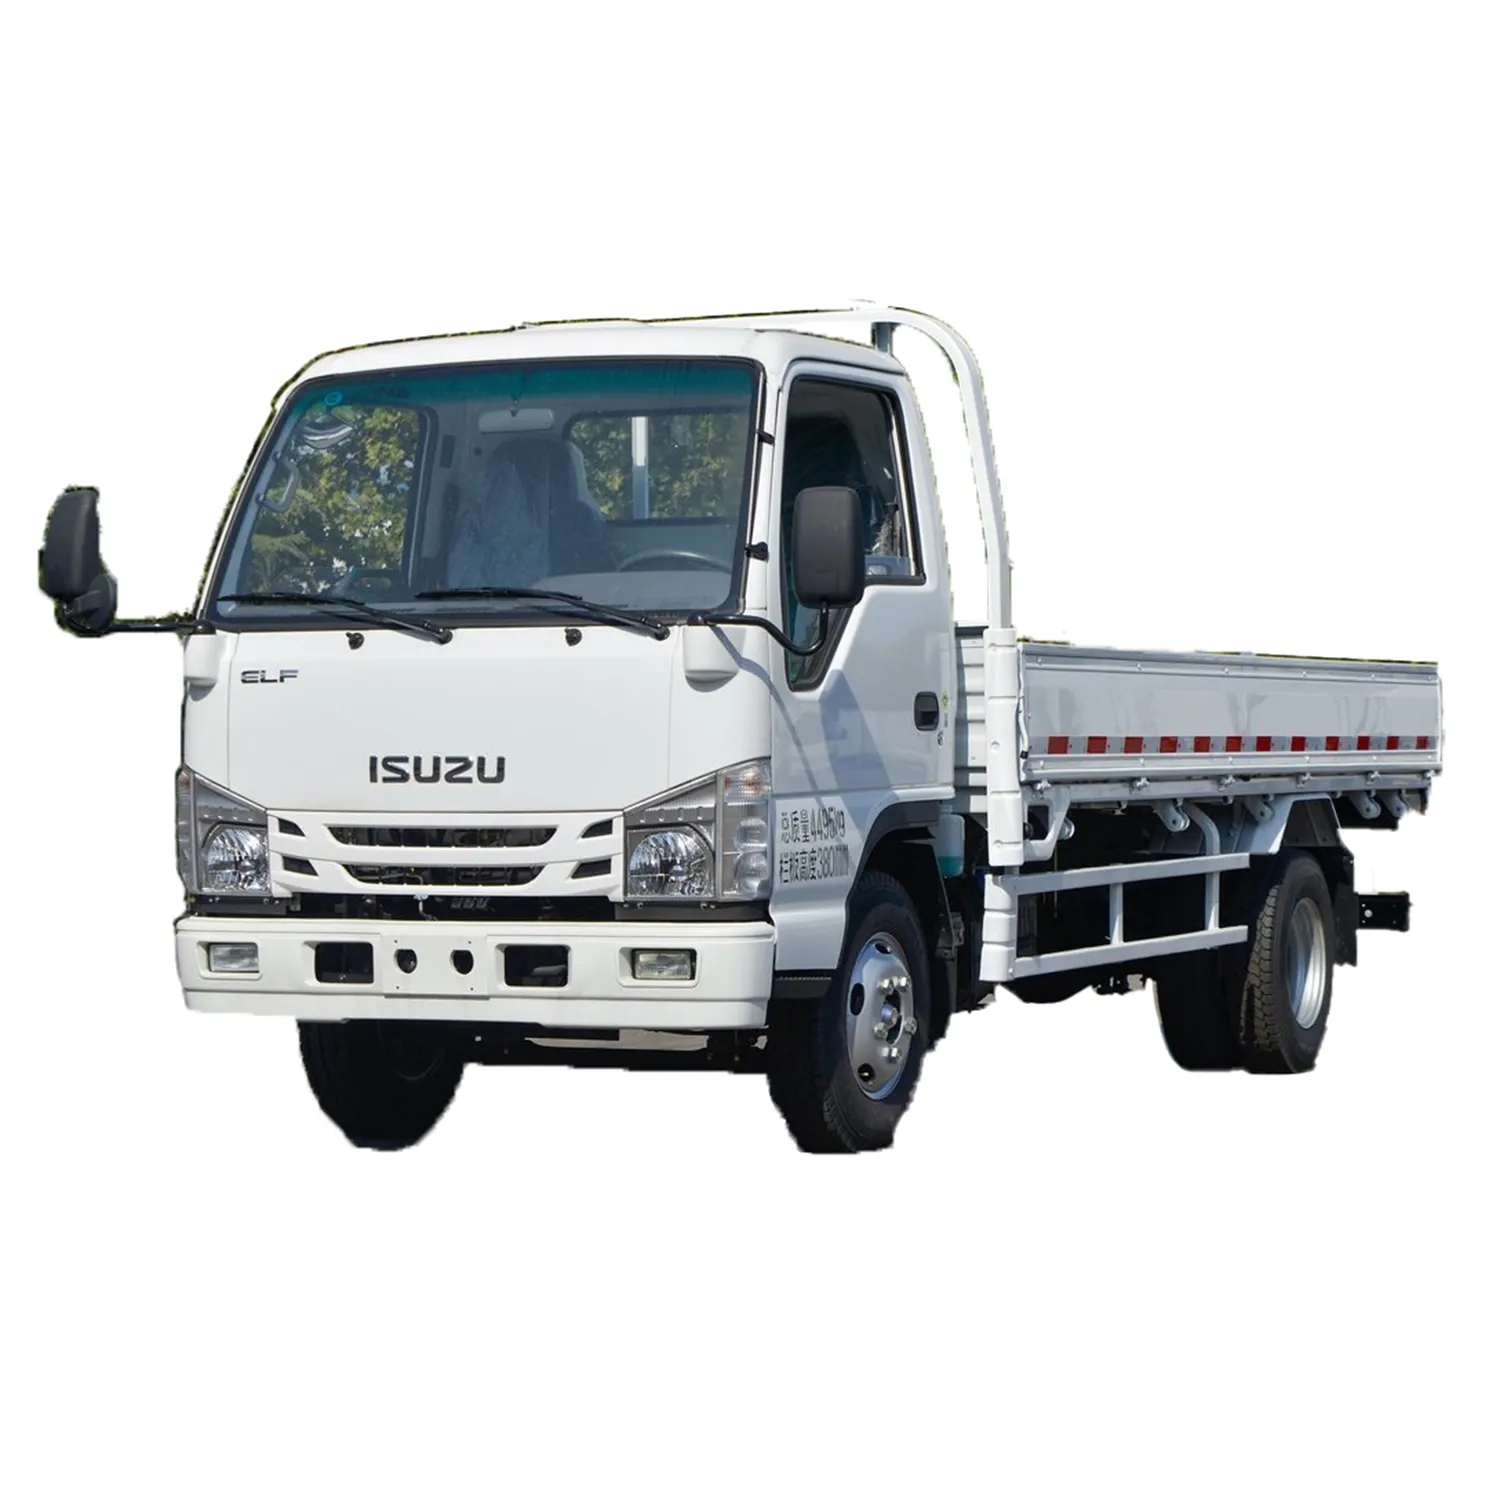 Vendita calda a buon mercato ISUZU luce carico camion 120hp 4x2 colonna piastra Mini usato camion Diesel elettrico benzina auto Euro VI per la vendita